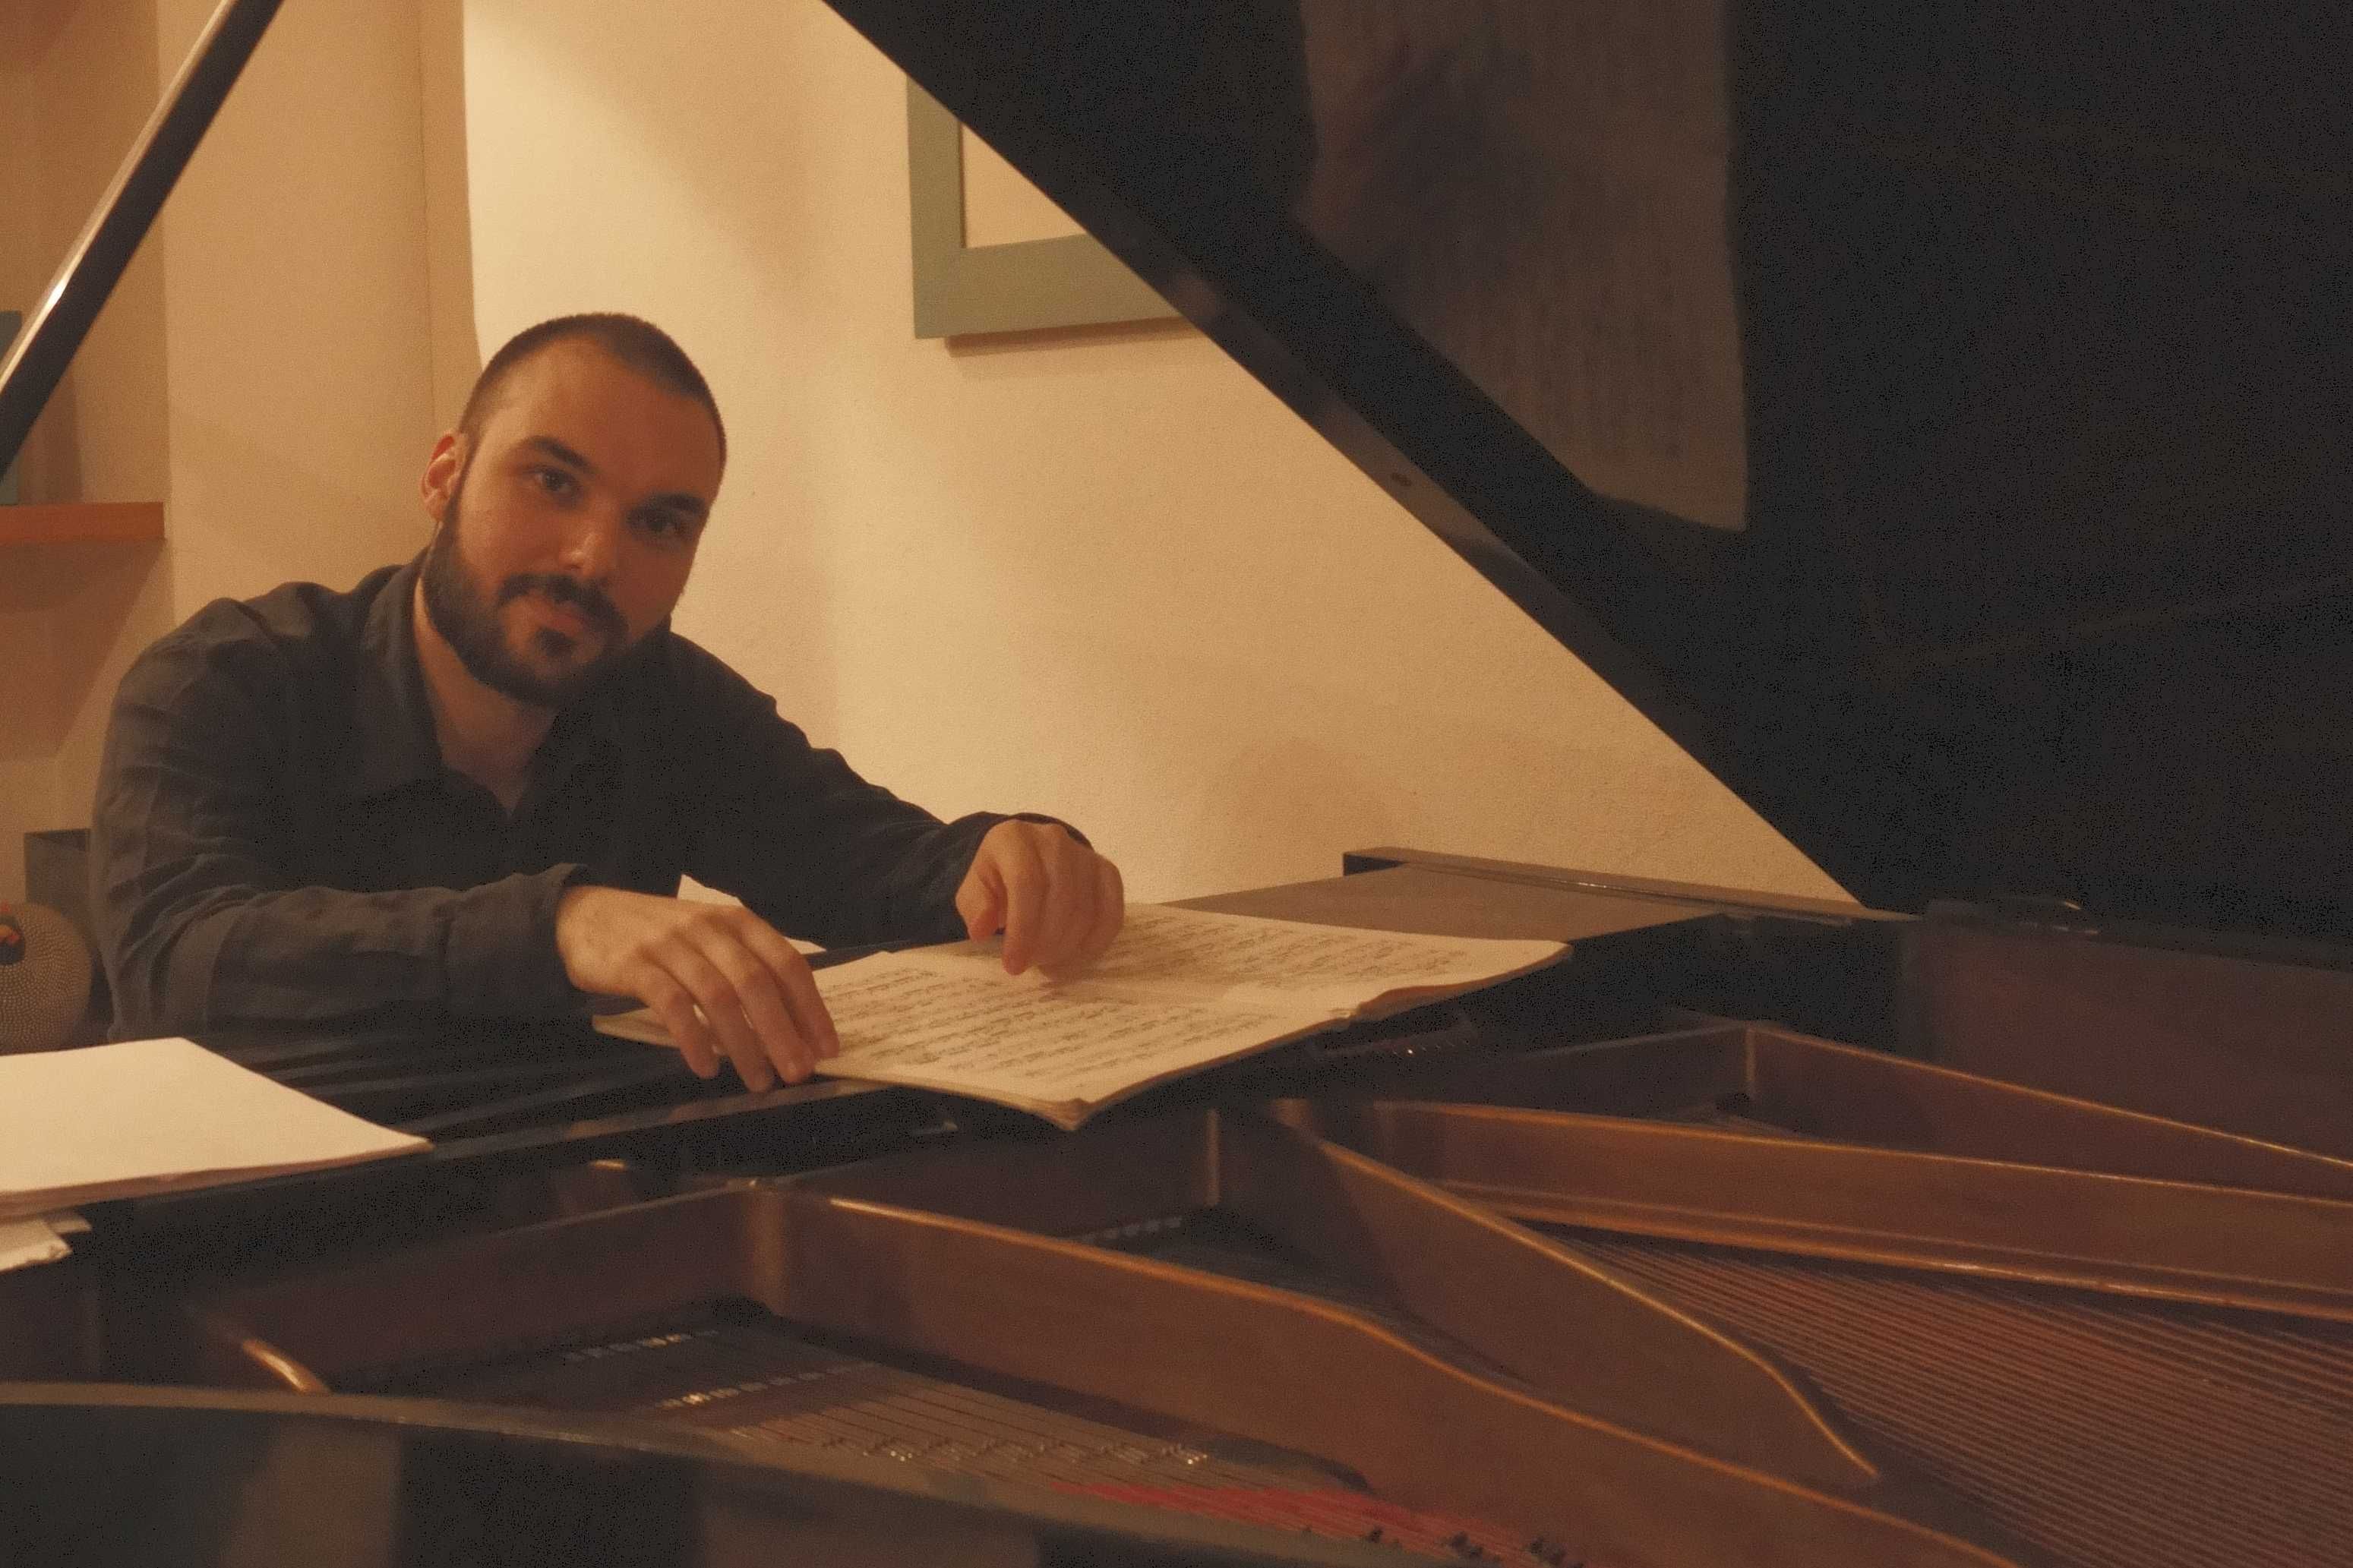 Aulas de Piano e Canto: Professor com Experiência Internacional